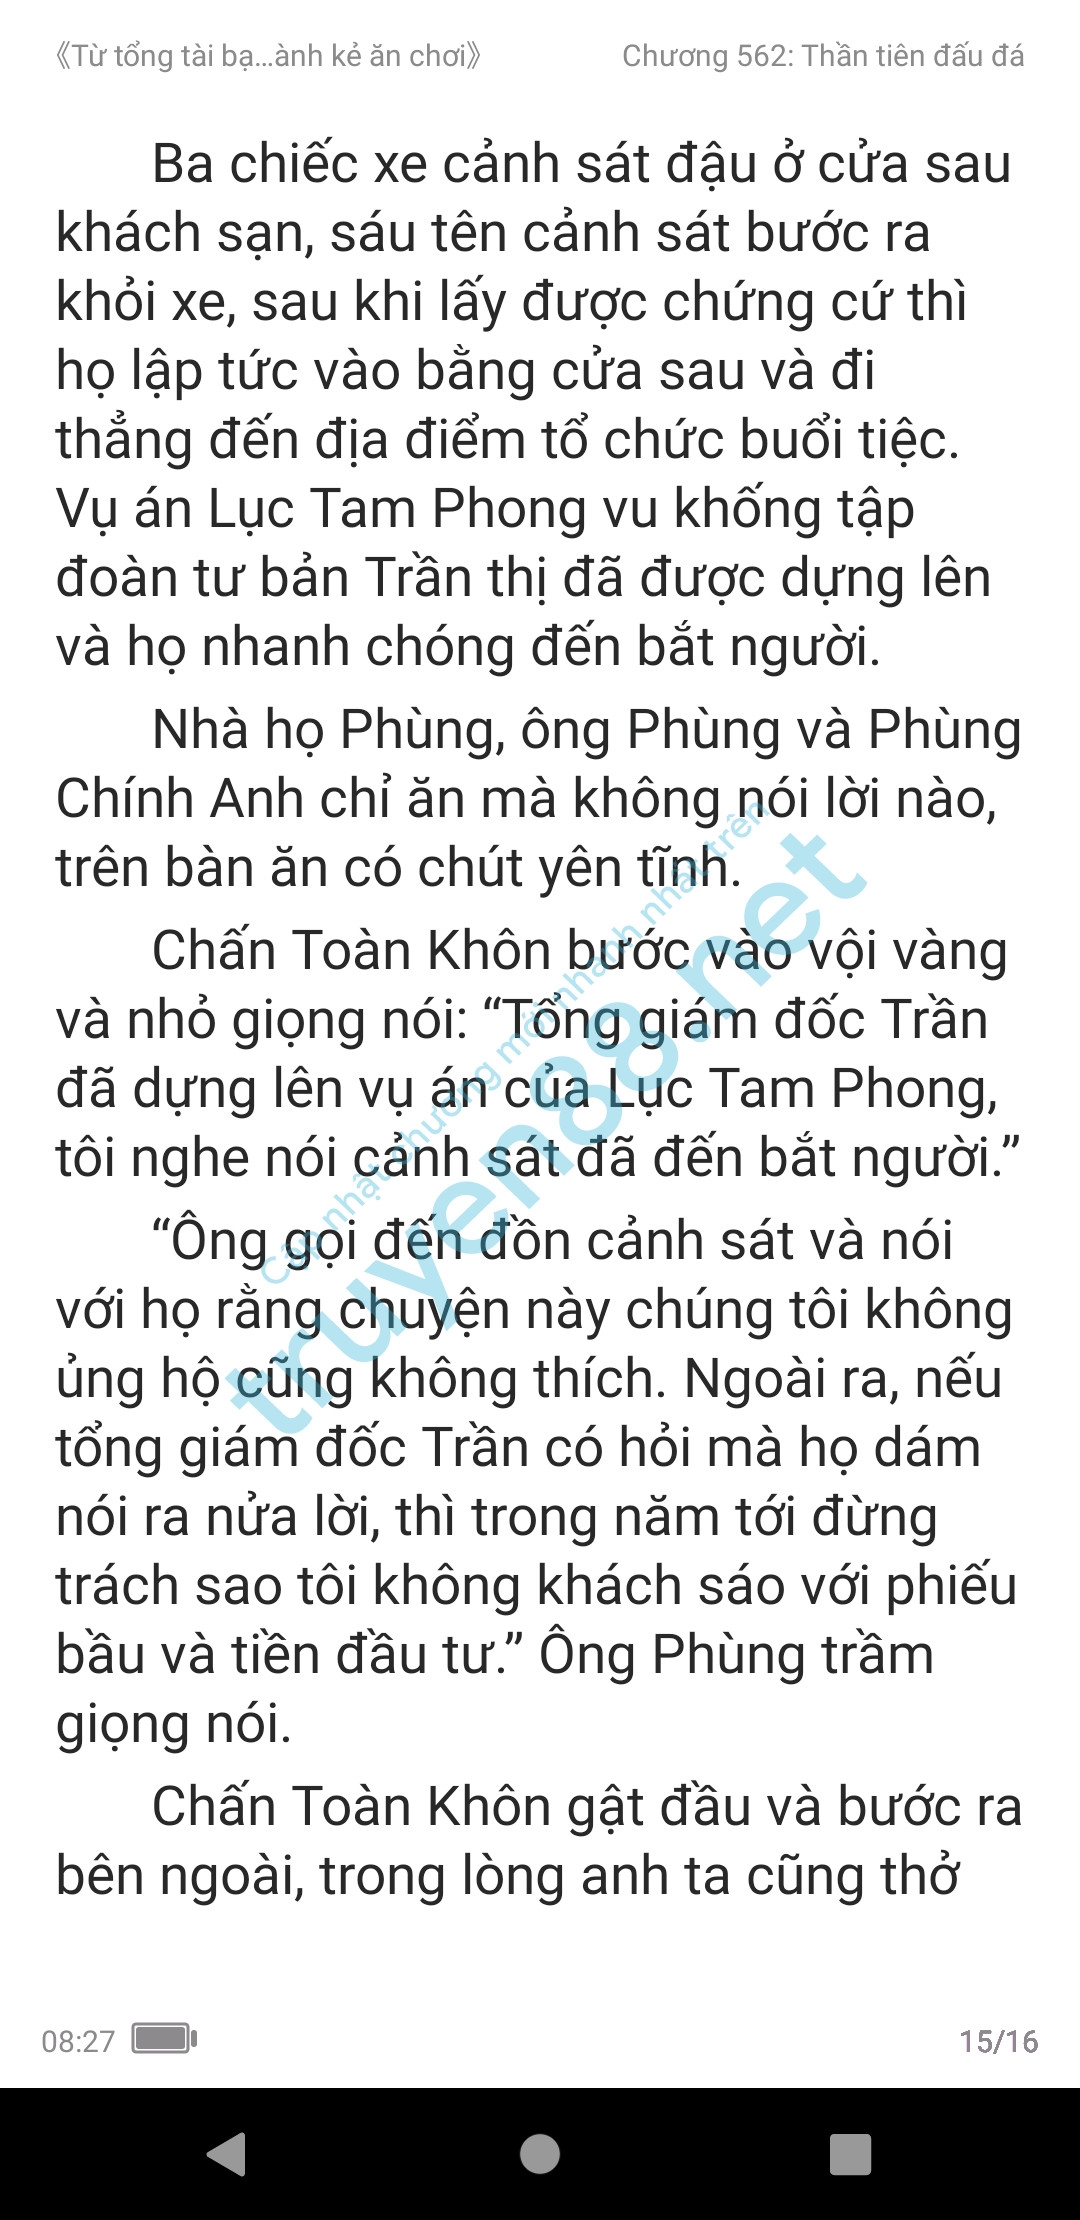 ke-an-choi-bien-tong-tai-562-1